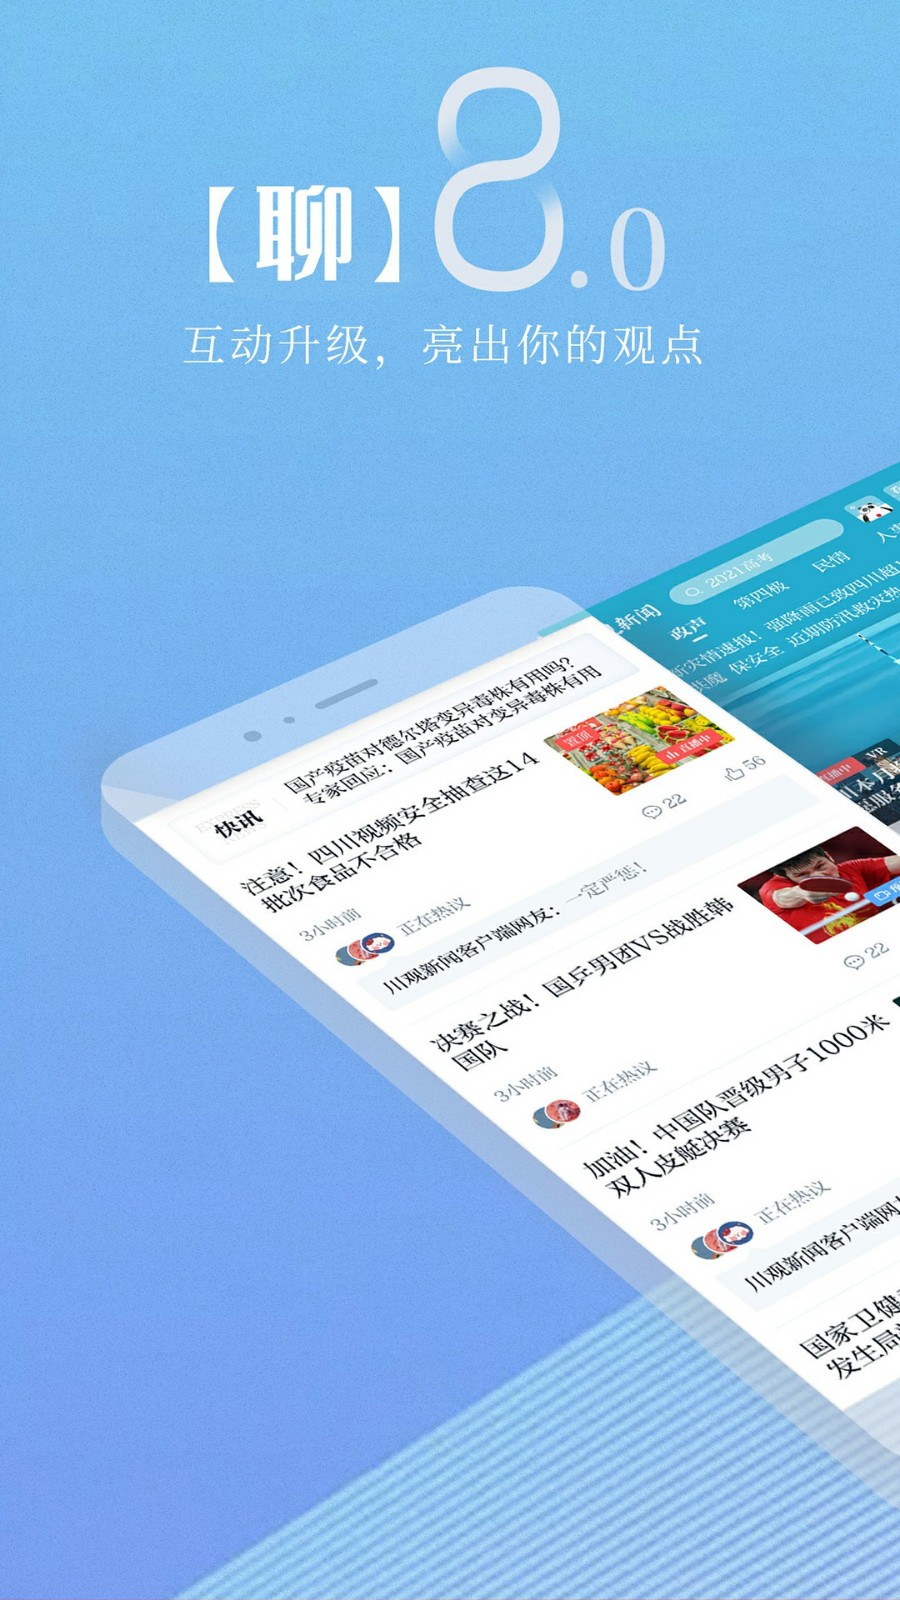 川观新闻app下载官方版最新版图1